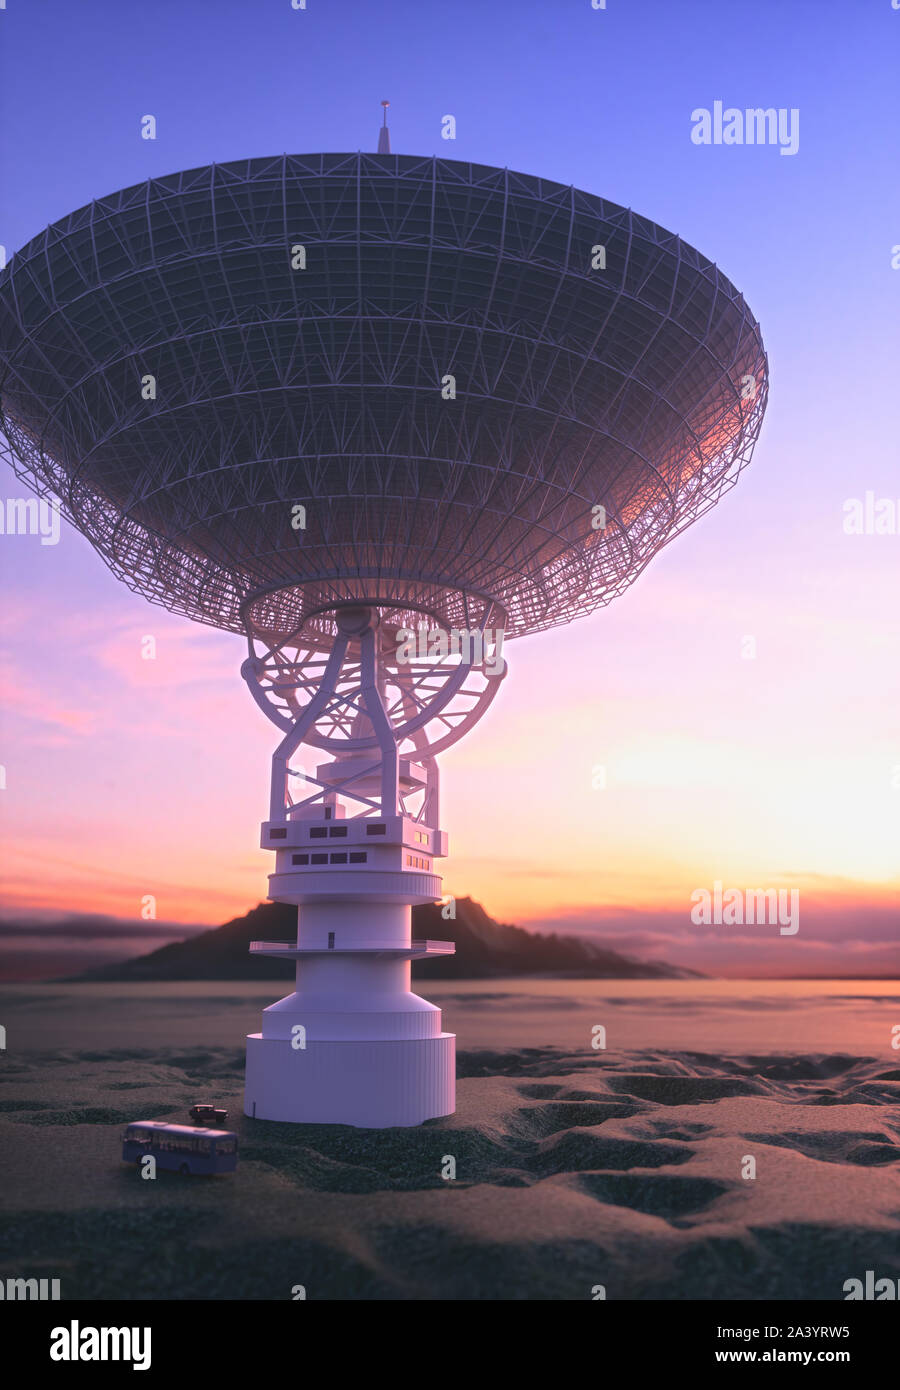 Enorme antenna satellitare piatto per la comunicazione e la ricezione del segnale al di fuori del pianeta Terra. Osservatorio per la ricerca del segnale radio nello spazio al tramonto. Foto Stock